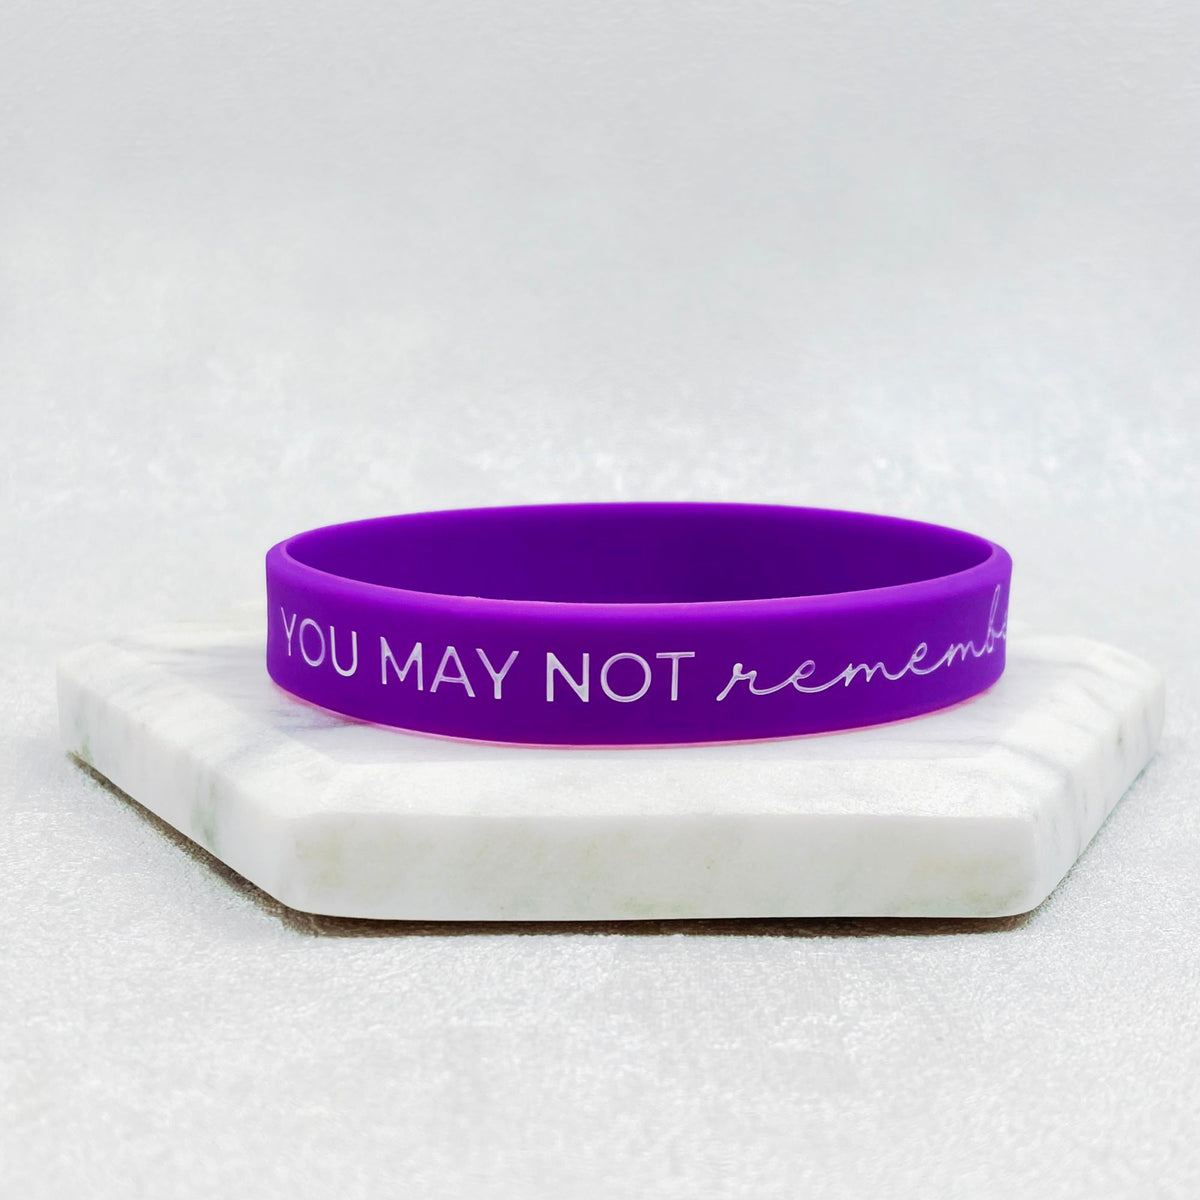 alzheimers awareness wristband uk